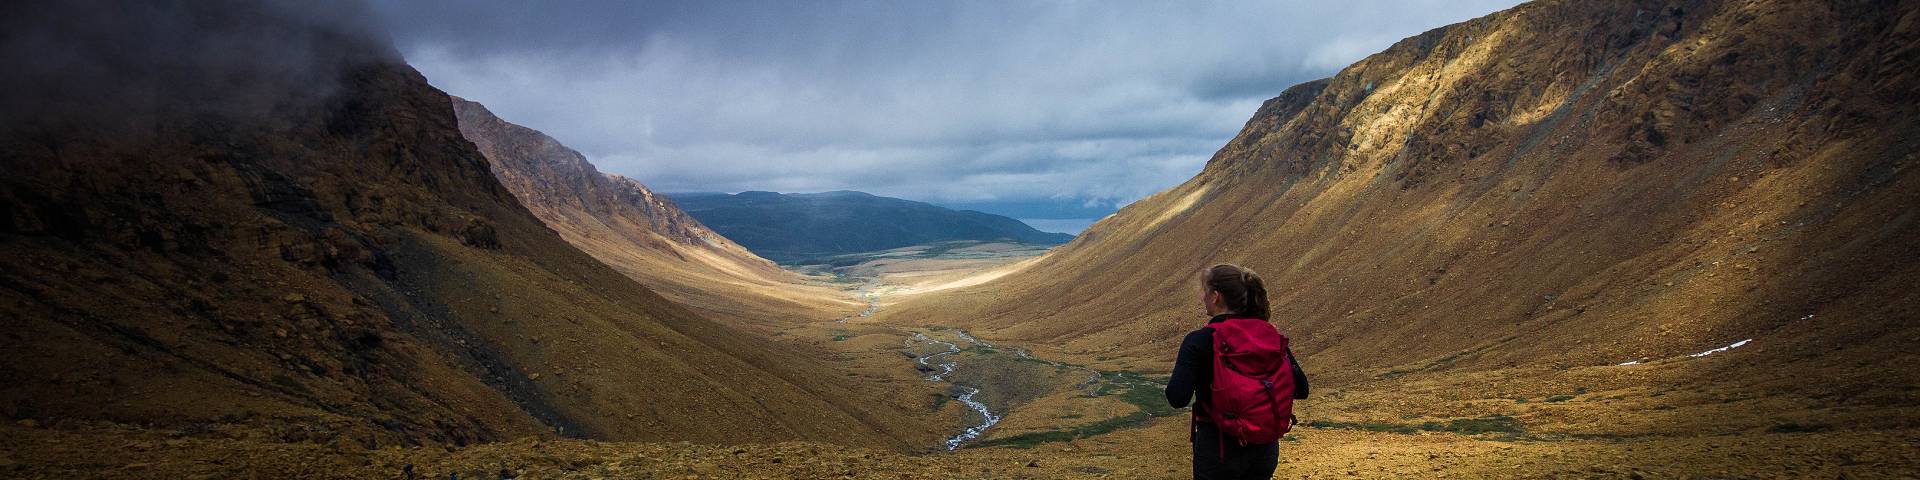 Un randonneur s'approche d'une vallée rocheuse dans les Tablelands du parc national du Gros-Morne